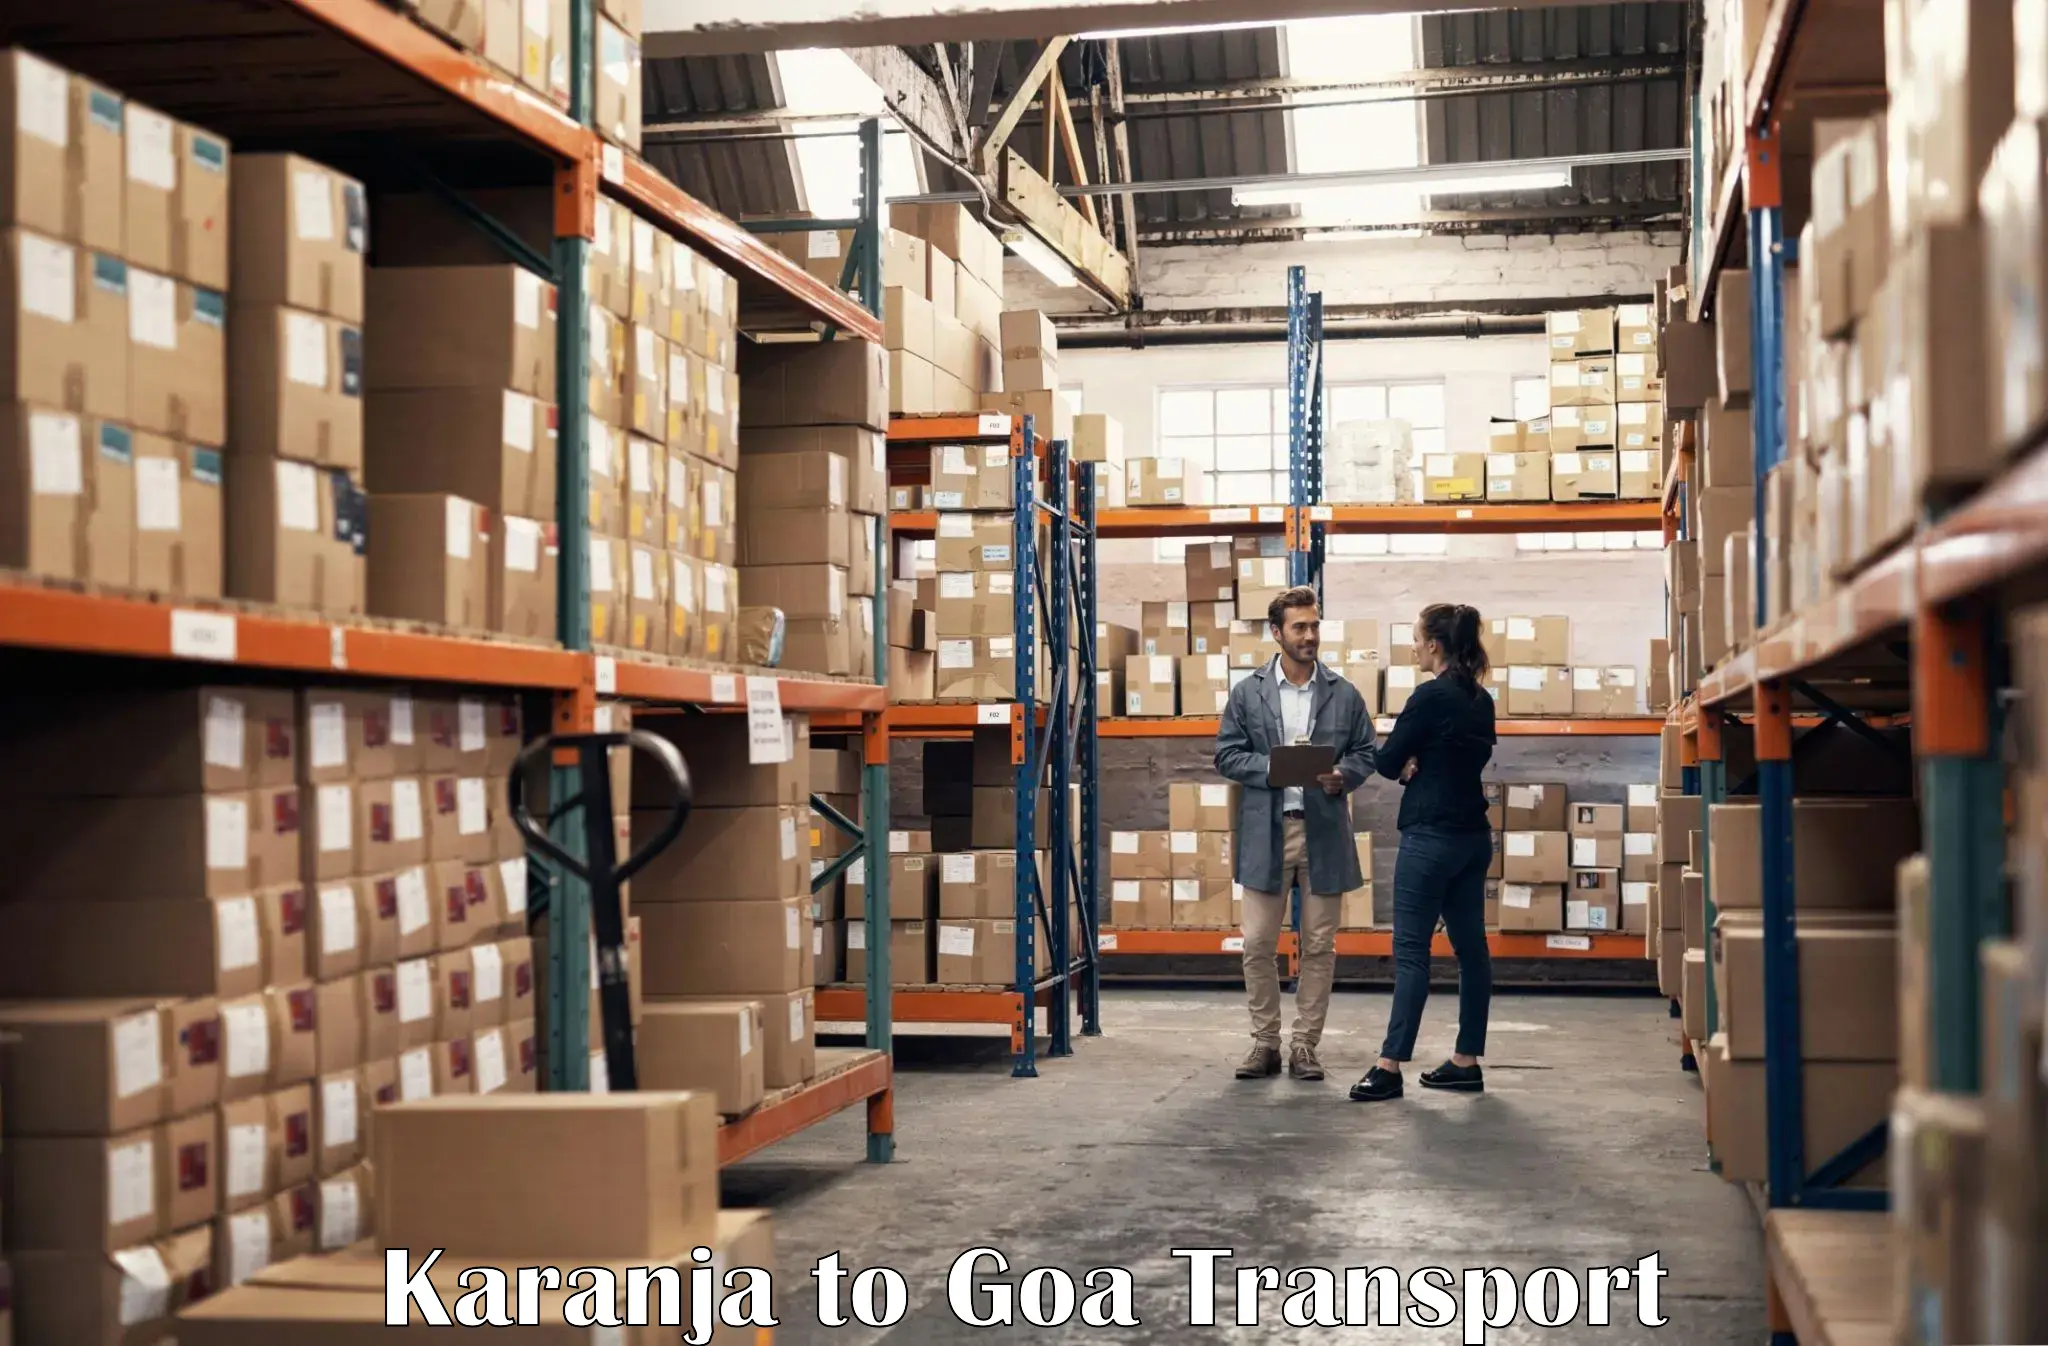 Transport in sharing Karanja to Mormugao Port